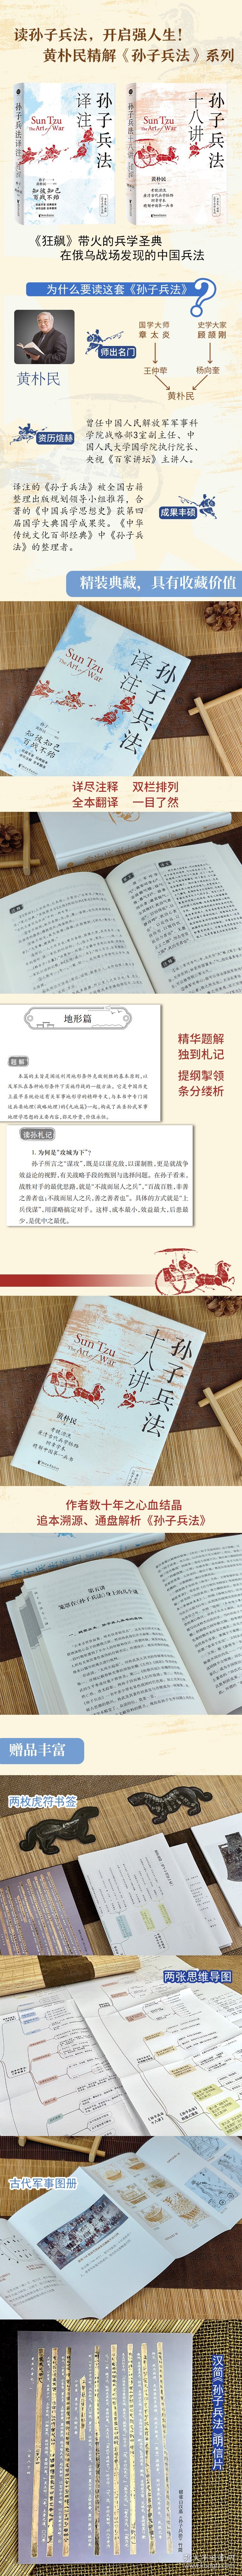 黄朴民精解《孙子兵法》系列典藏版(全2册)